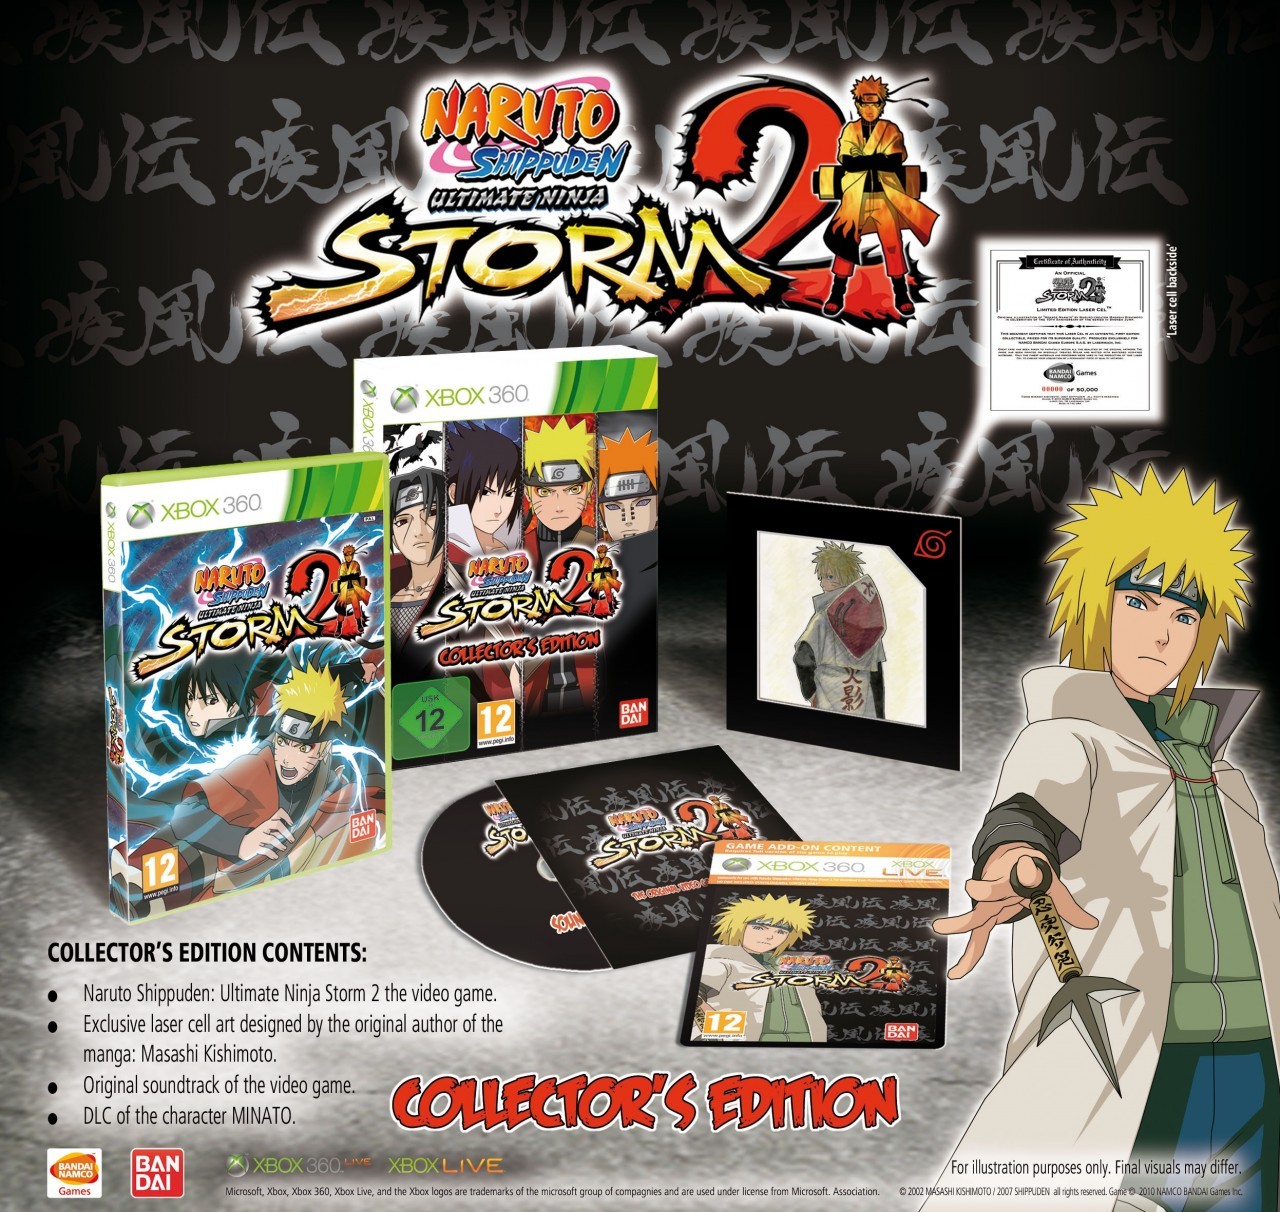 Comment débloquer Minato dans Naruto Ultimate Ninja Storm 2 ?